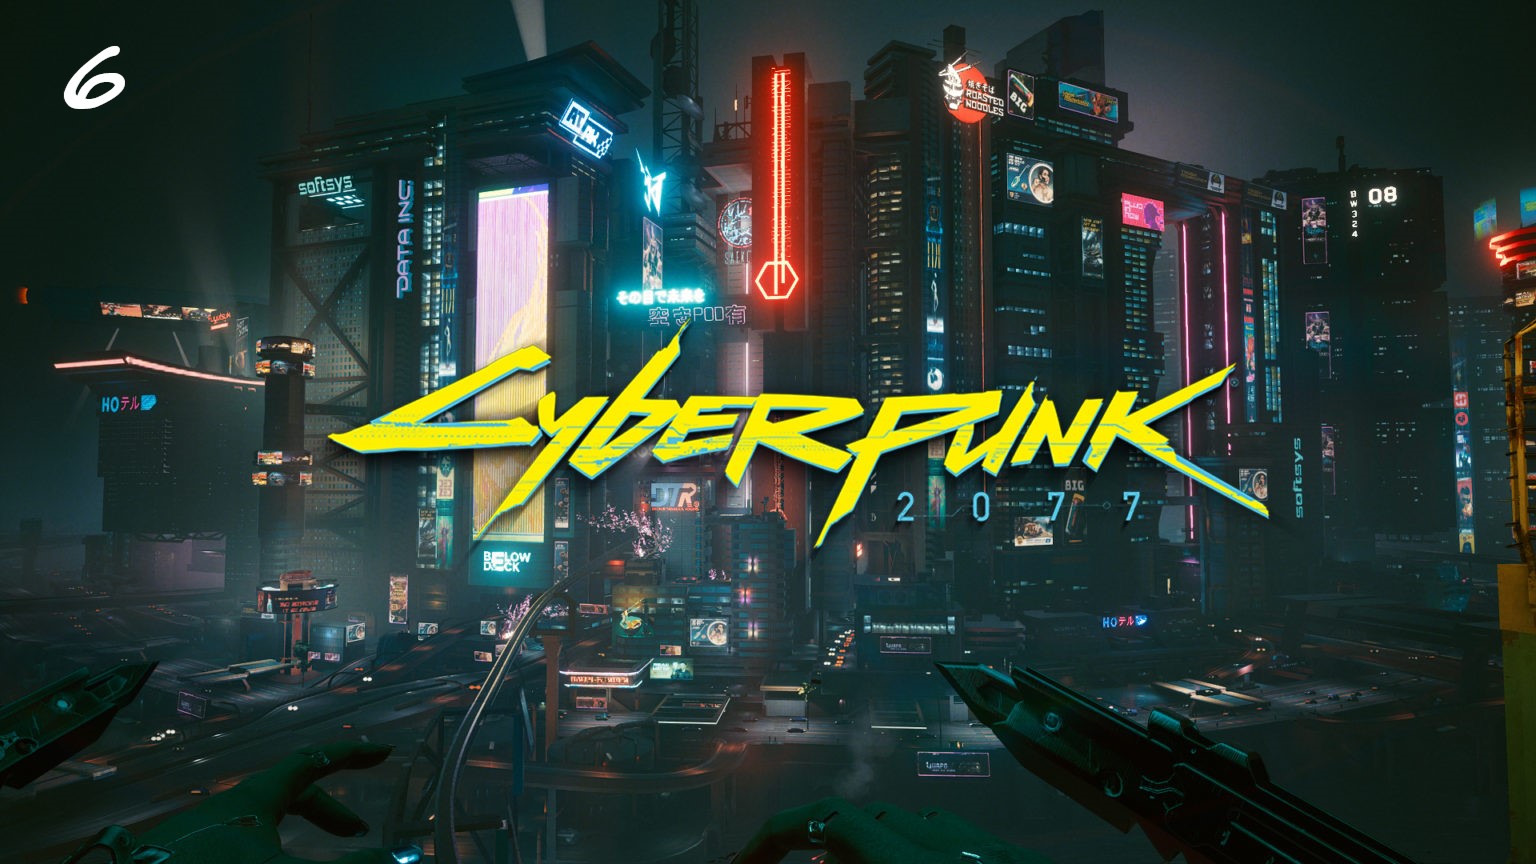 Прохождение Cyberpunk 2077 на русском - Часть шестая. Шерше ля фам